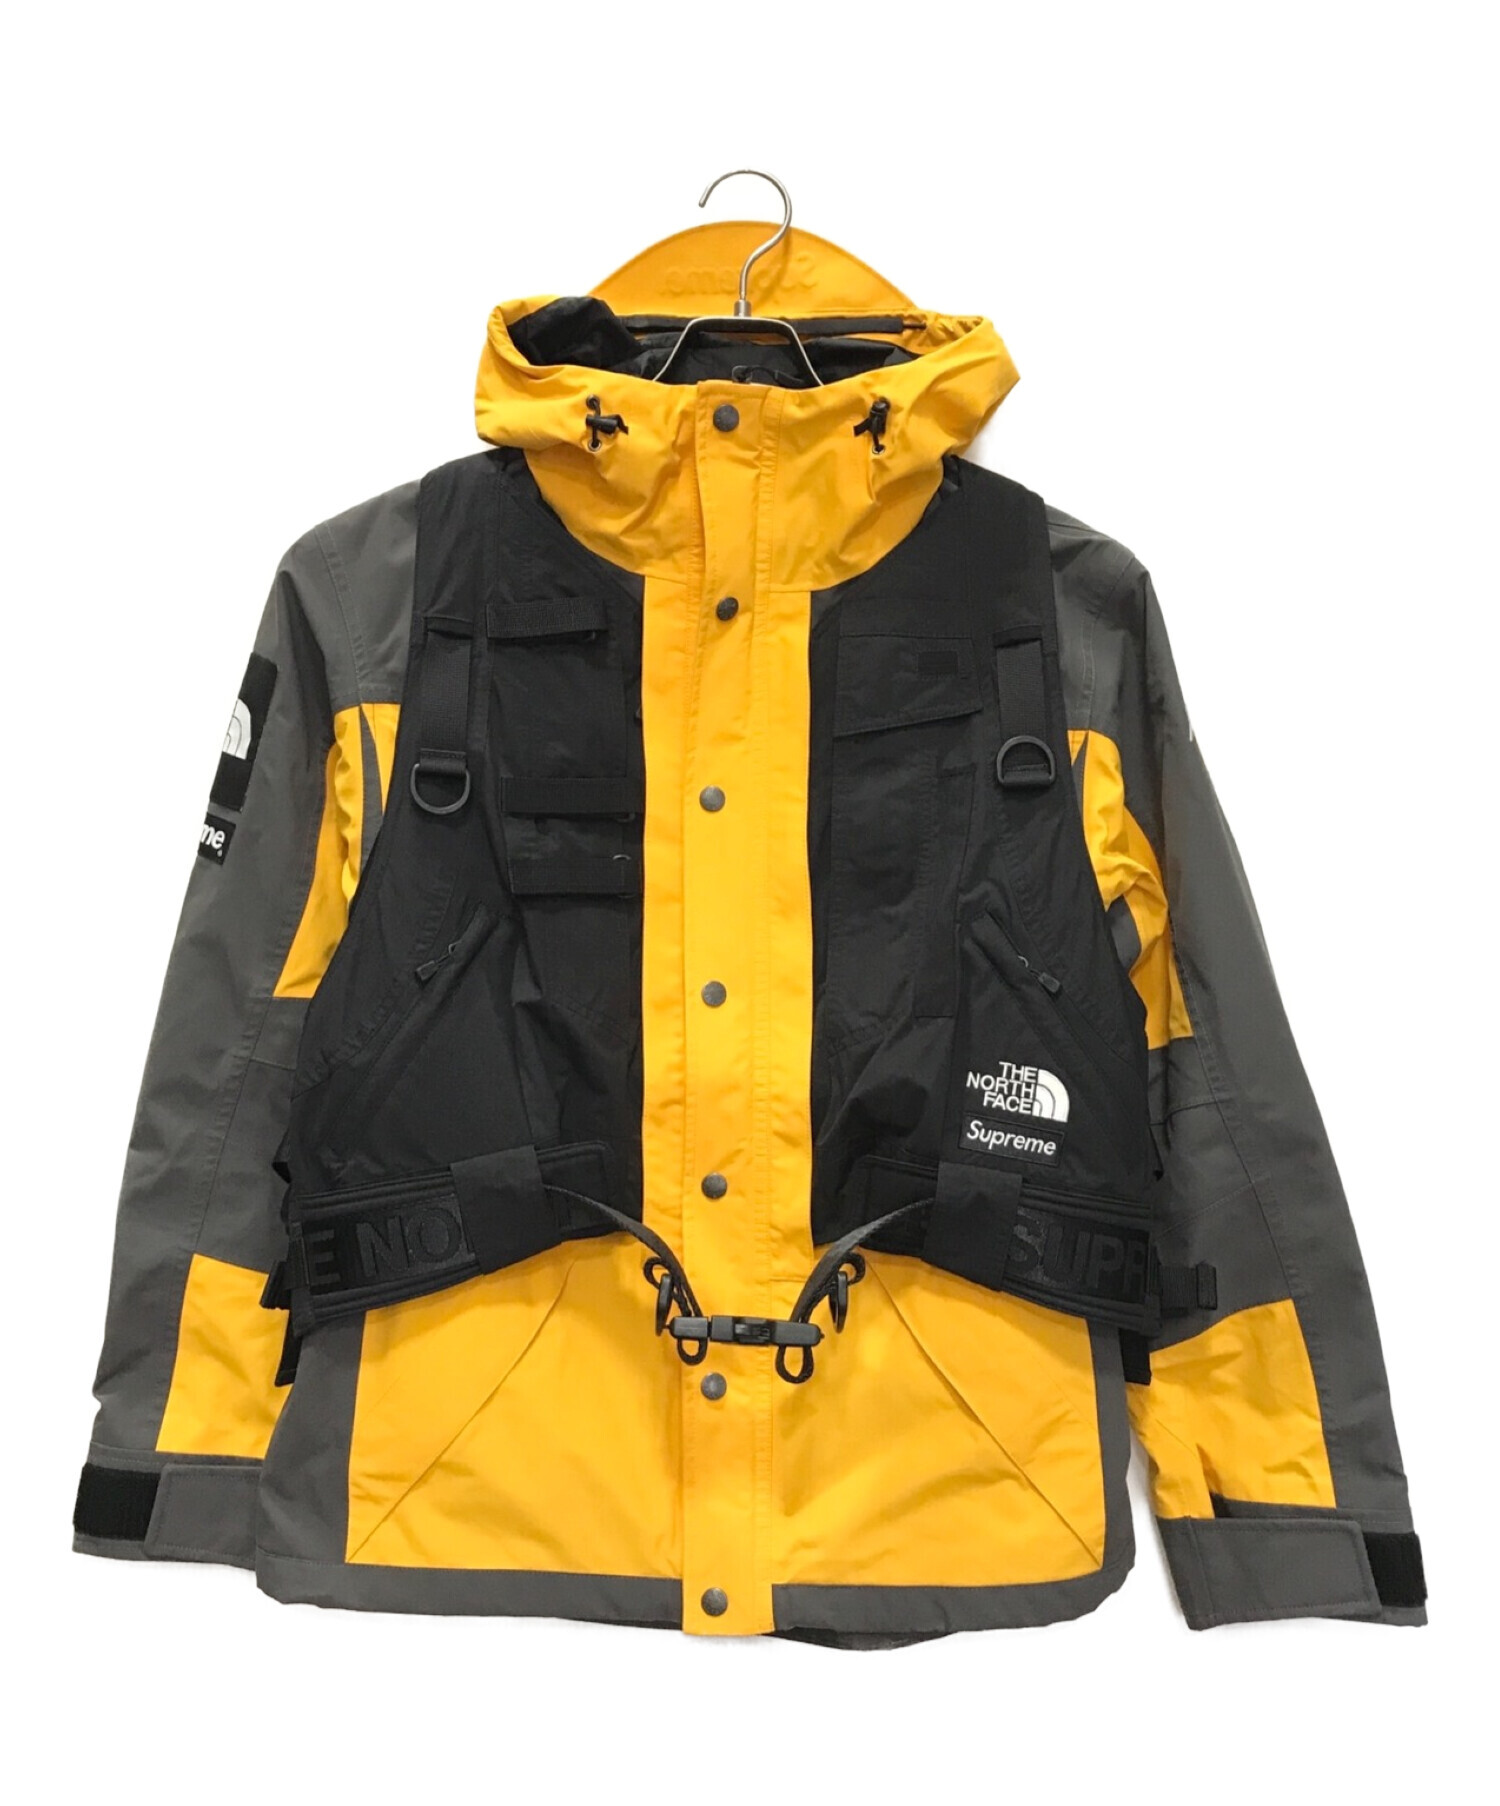 23,999円supreme the north face rtg jacket サイズS